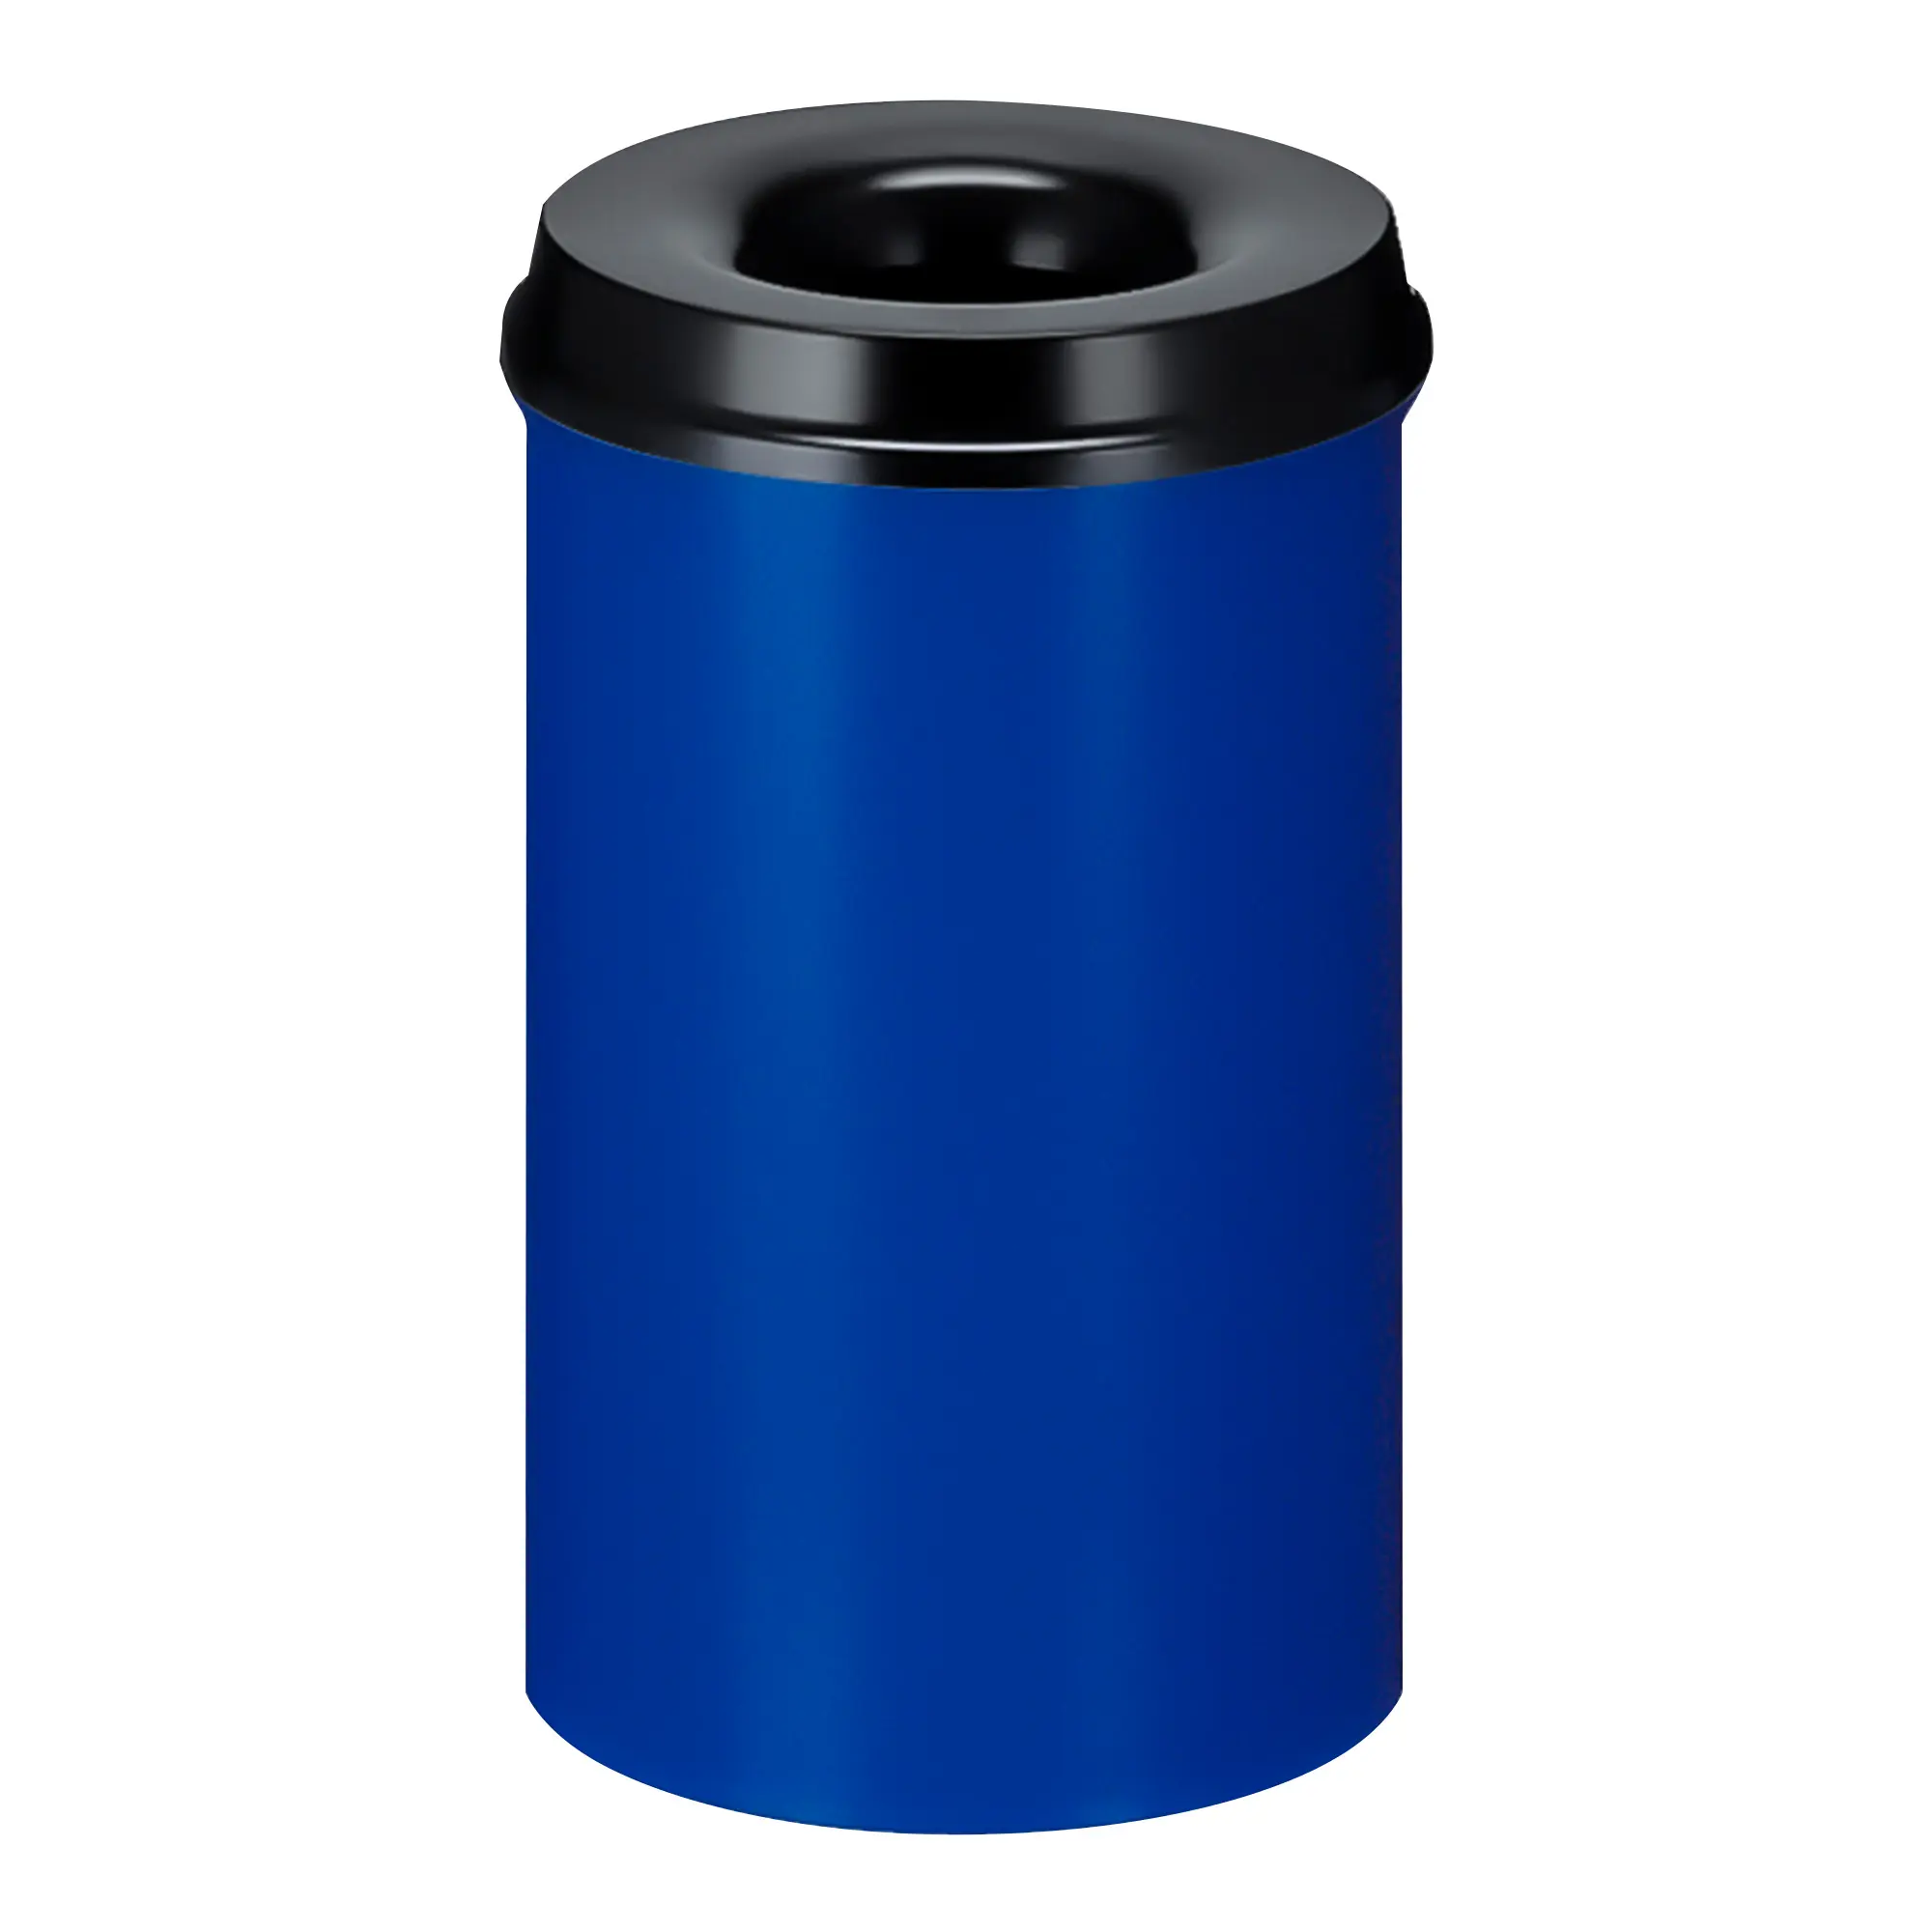 V-Part Feuerlöschender Papierkorb 20 Liter blau/schwarz 31035649_1